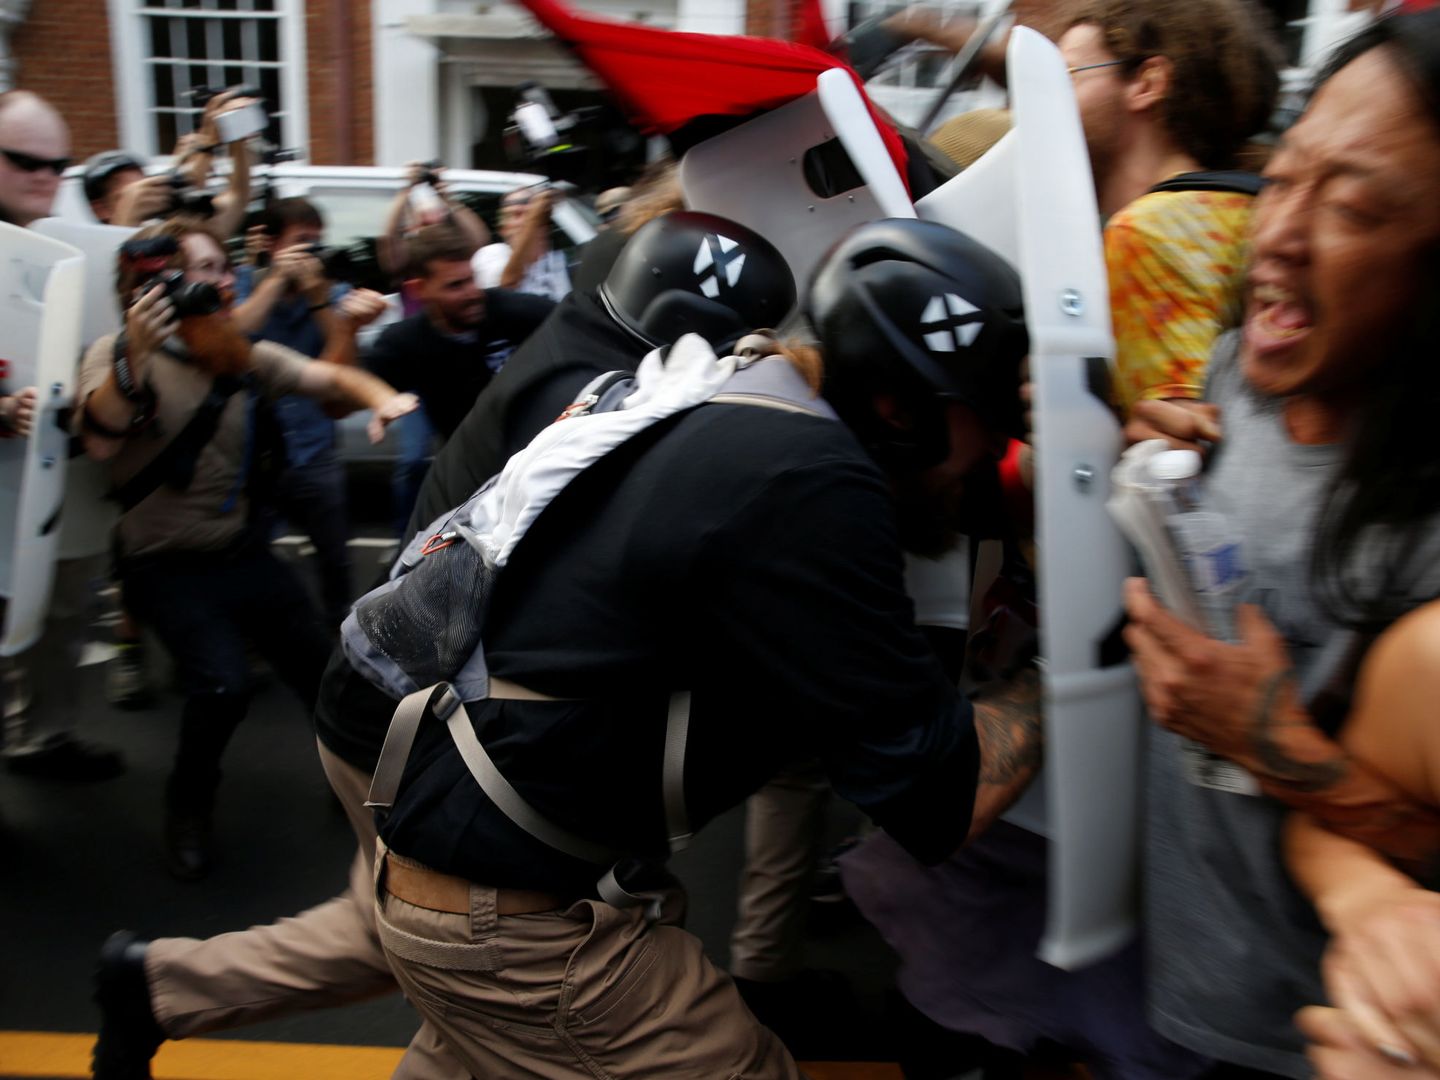 Nacionalistas blancos cargan contra los grupos que protestan contra la marcha (Reuters)